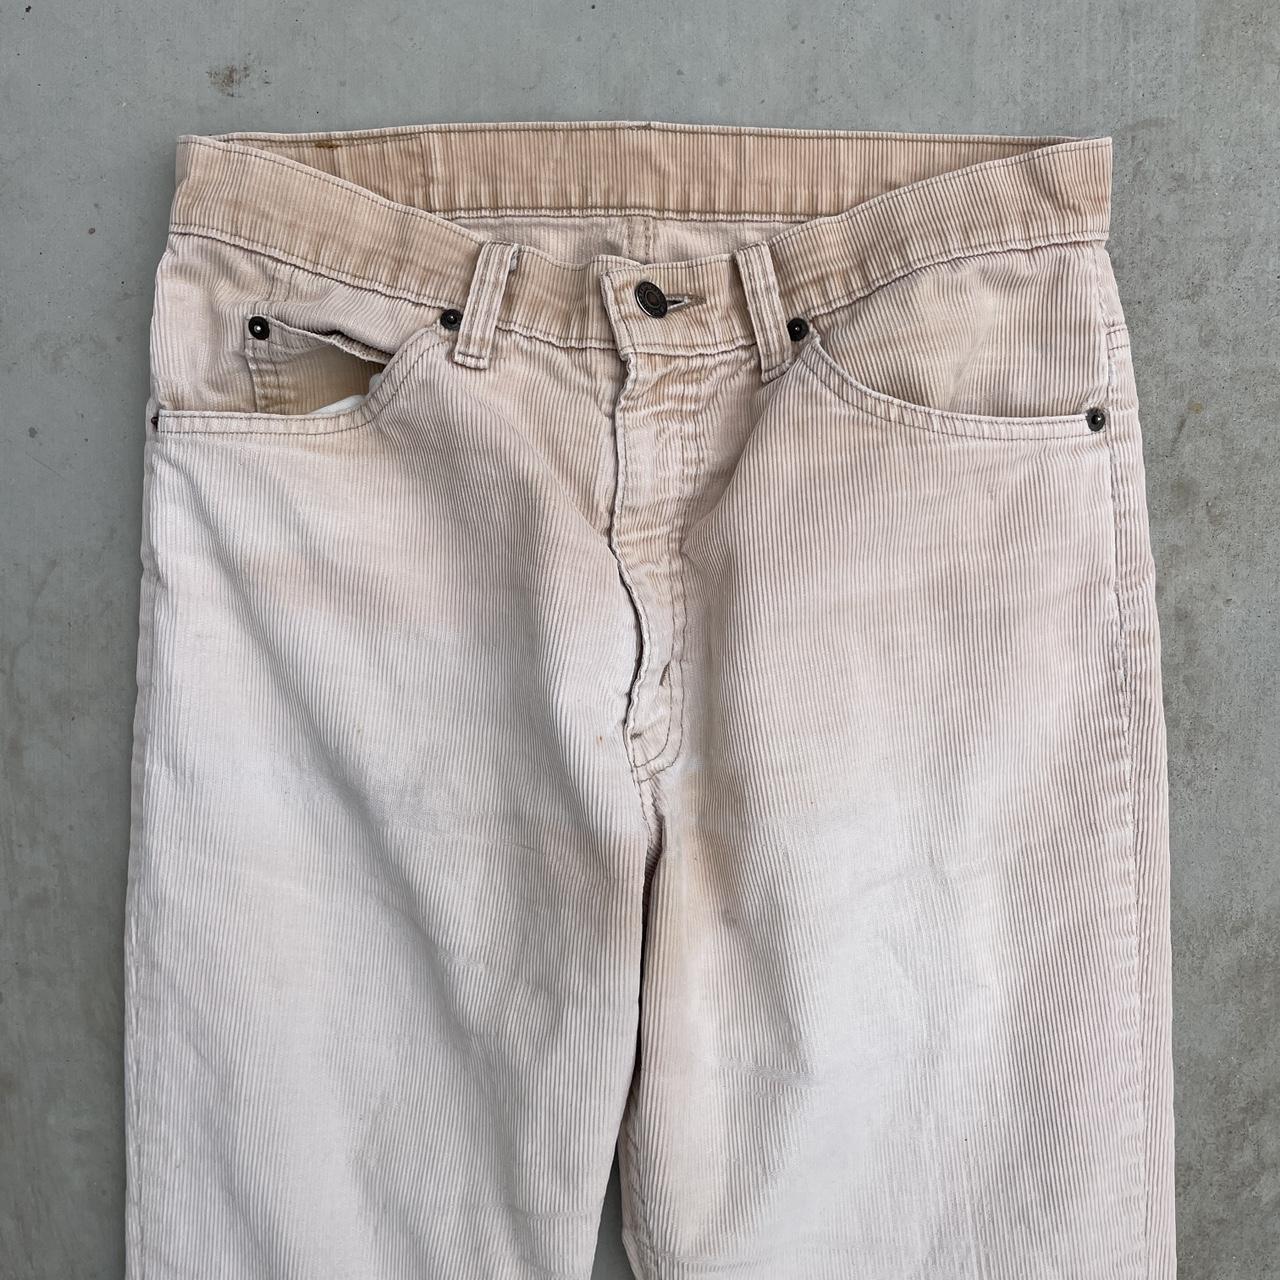 Vintage 70s Levi’s 517 Bootcut Corduroy Pants Super... - Depop